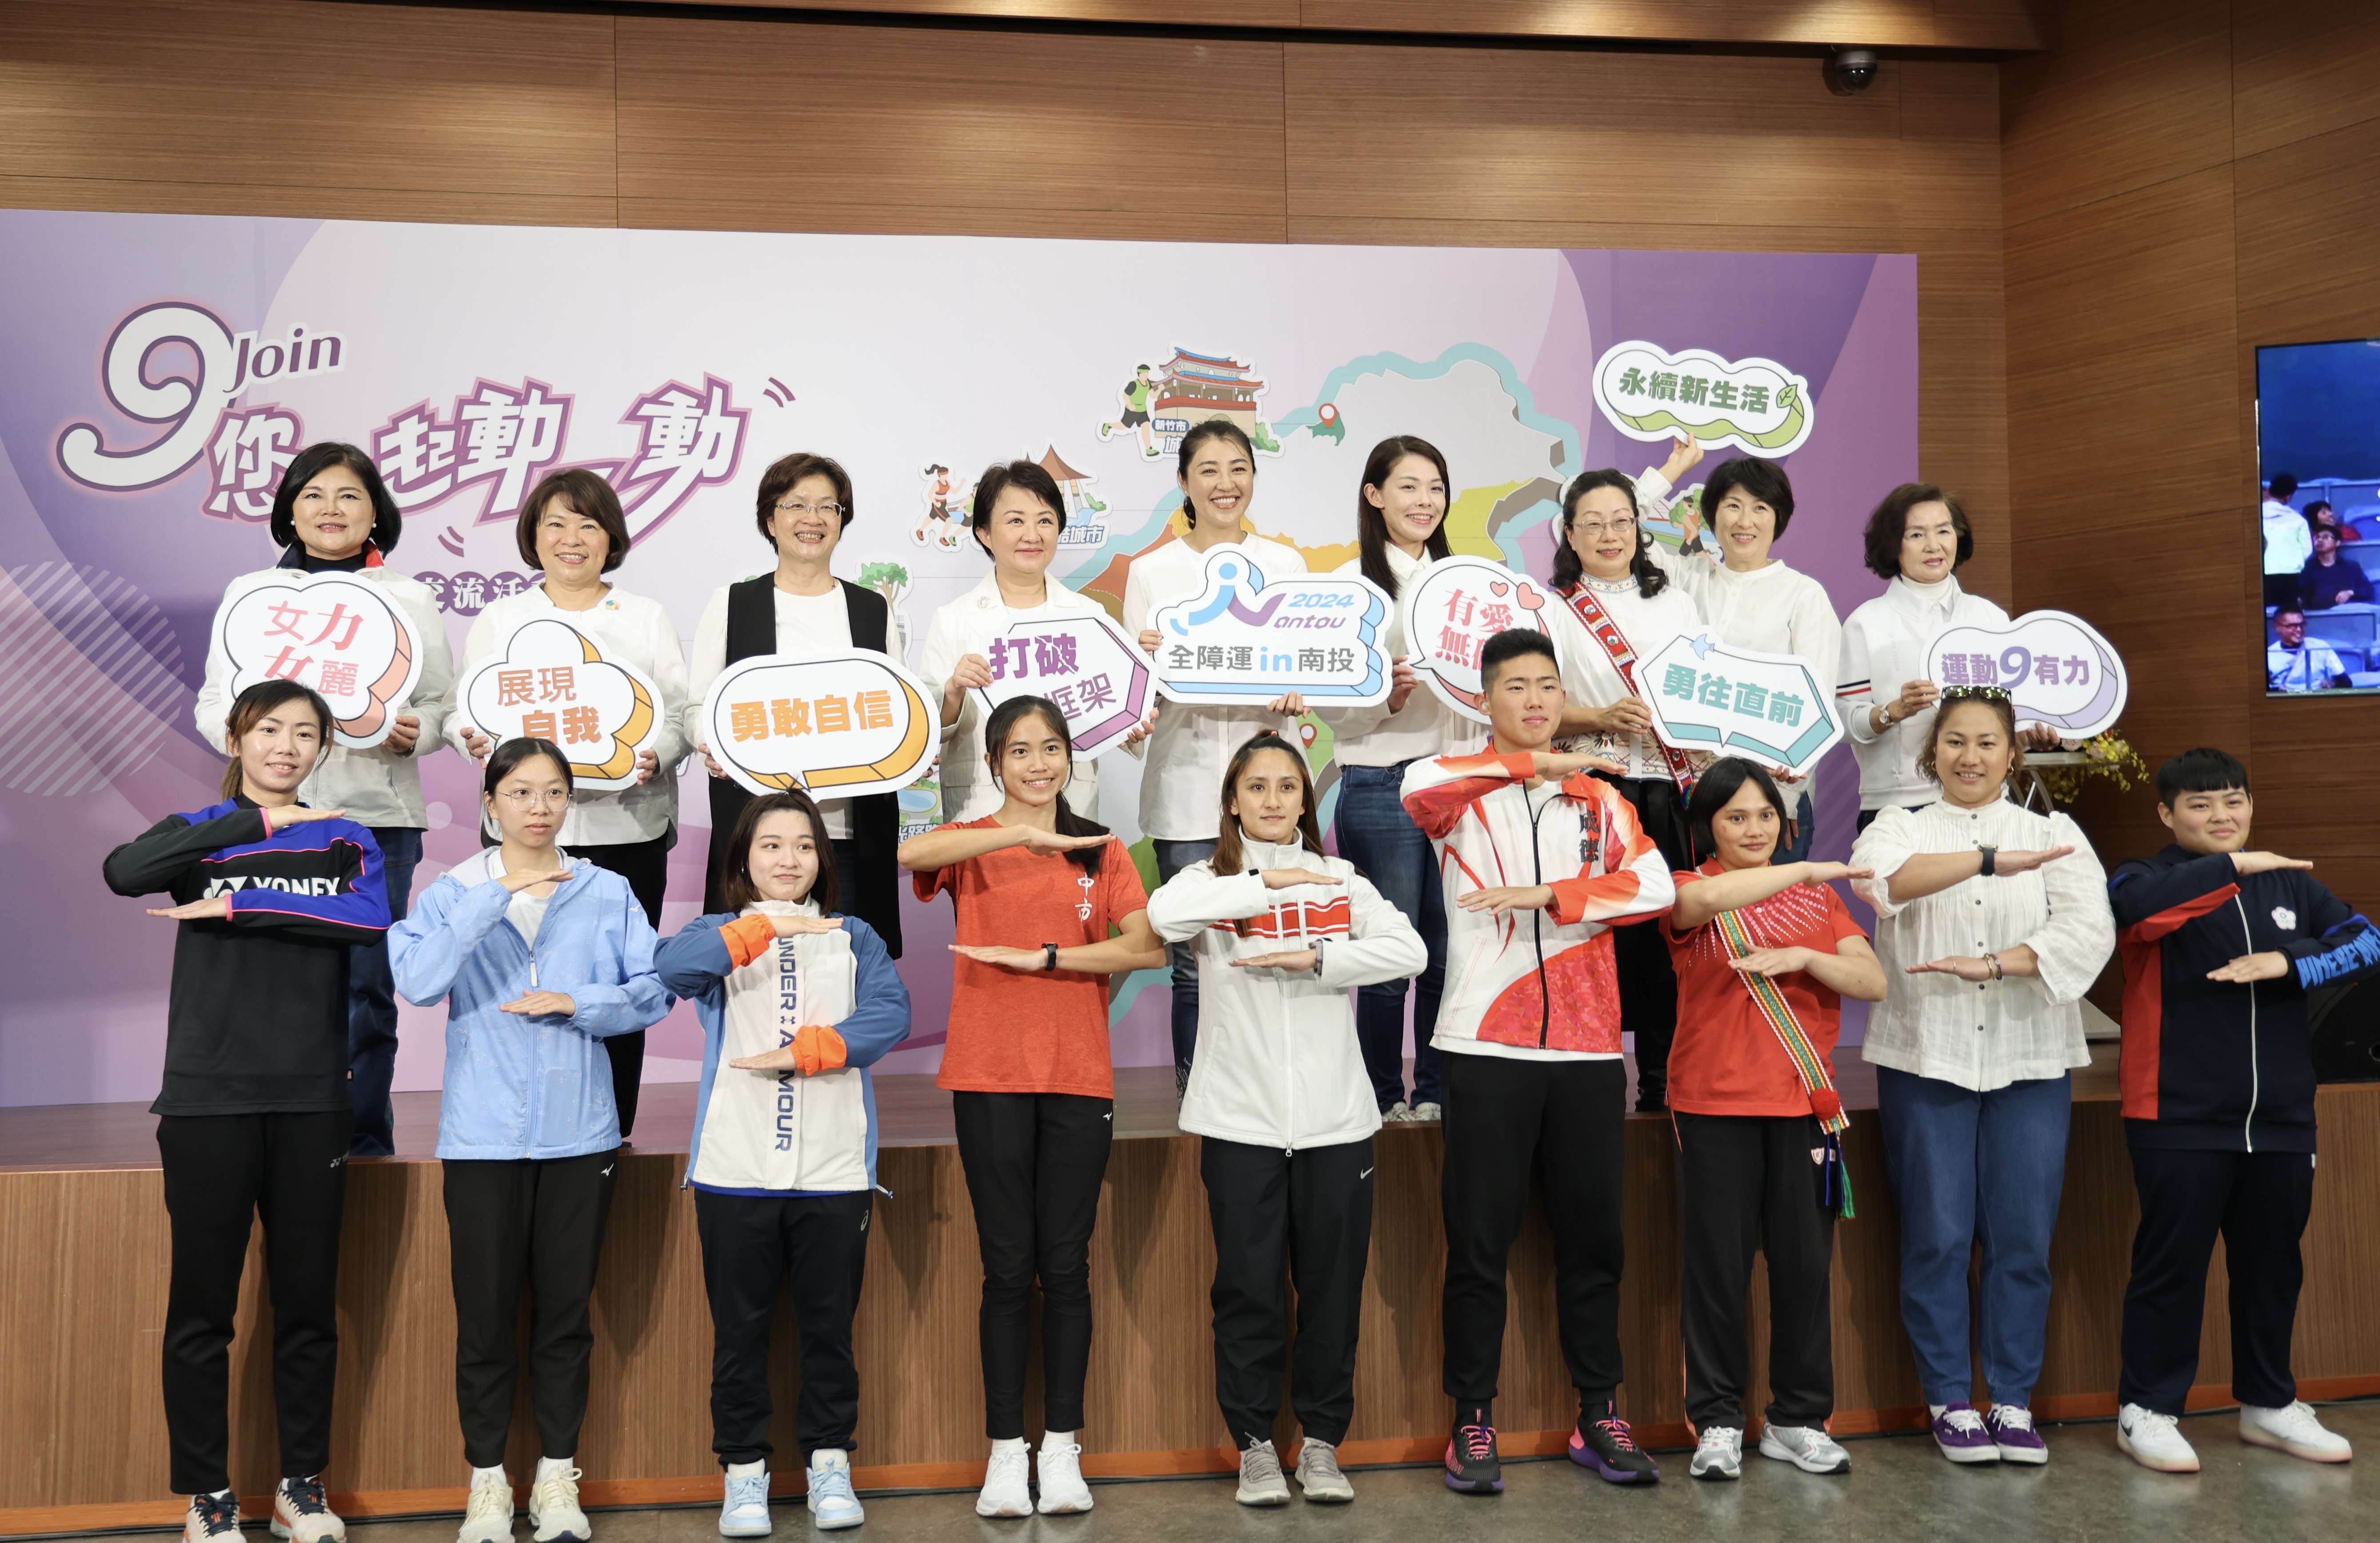  「Join」您一起動一動 女性縣市長齊聚南投 張麗善縣長:爭取女力、健康、運動平權